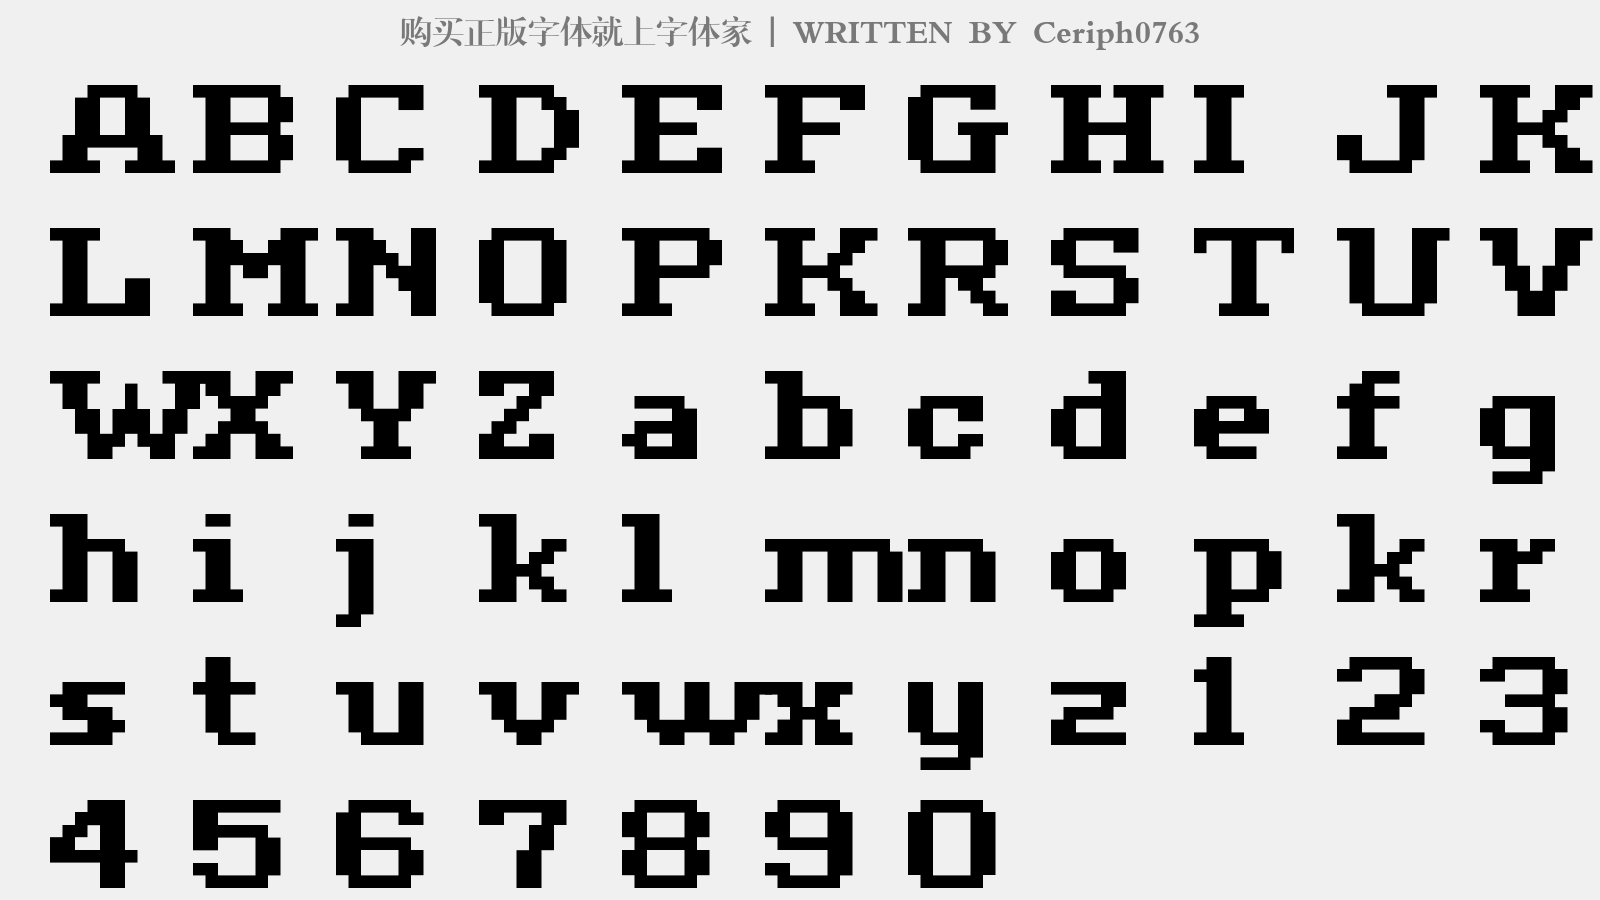 Ceriph0763 - 大写字母/小写字母/数字